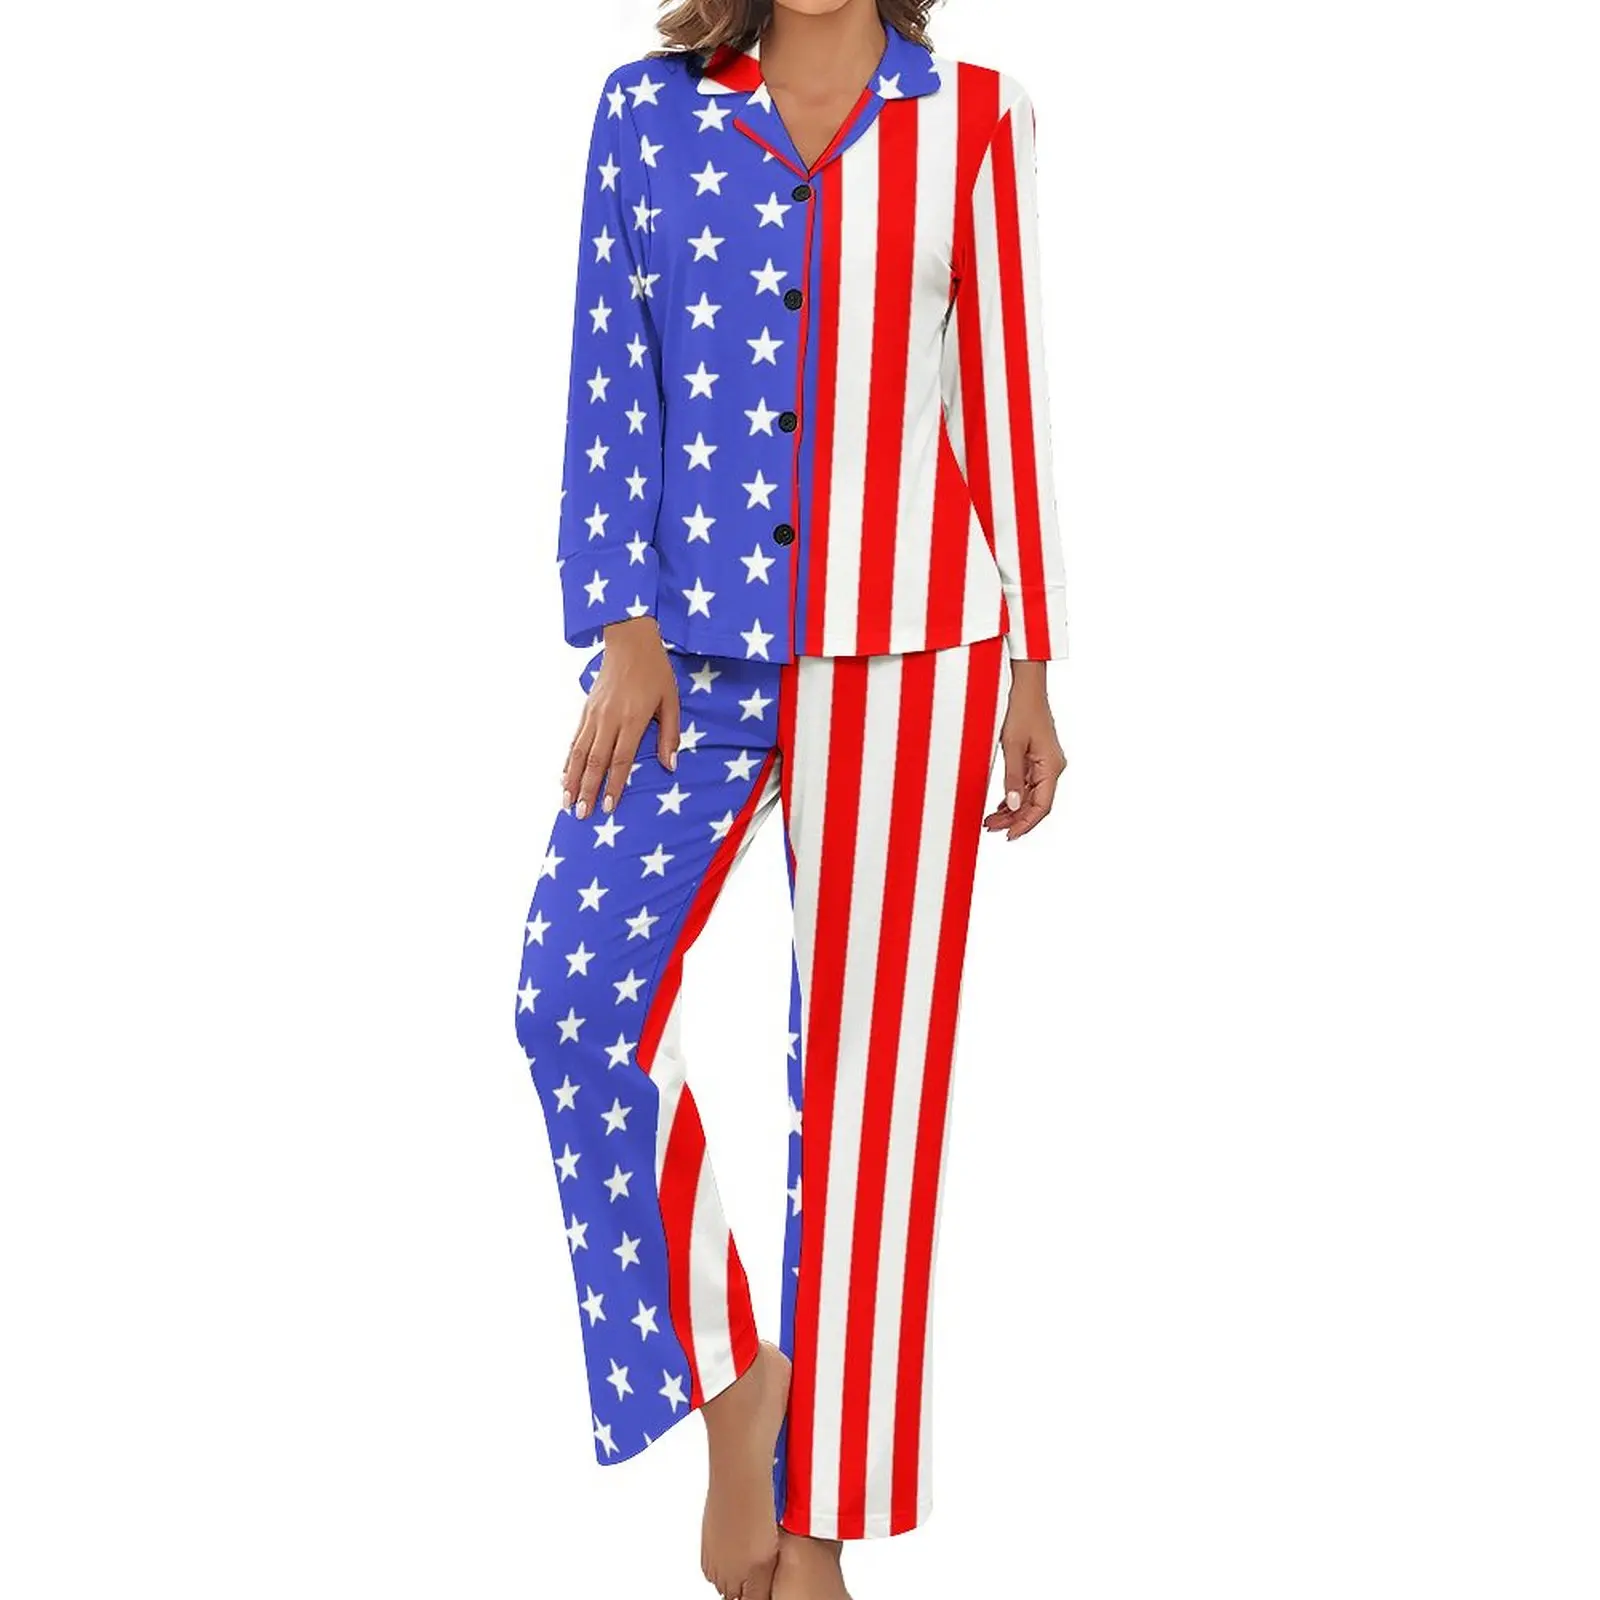 

Пижама с американским флагом, США, звезды и полоски, мягкие пижамные комплекты с длинным рукавом, 2 предмета, для сна, осенний дизайн, одежда для сна, подарок на день рождения